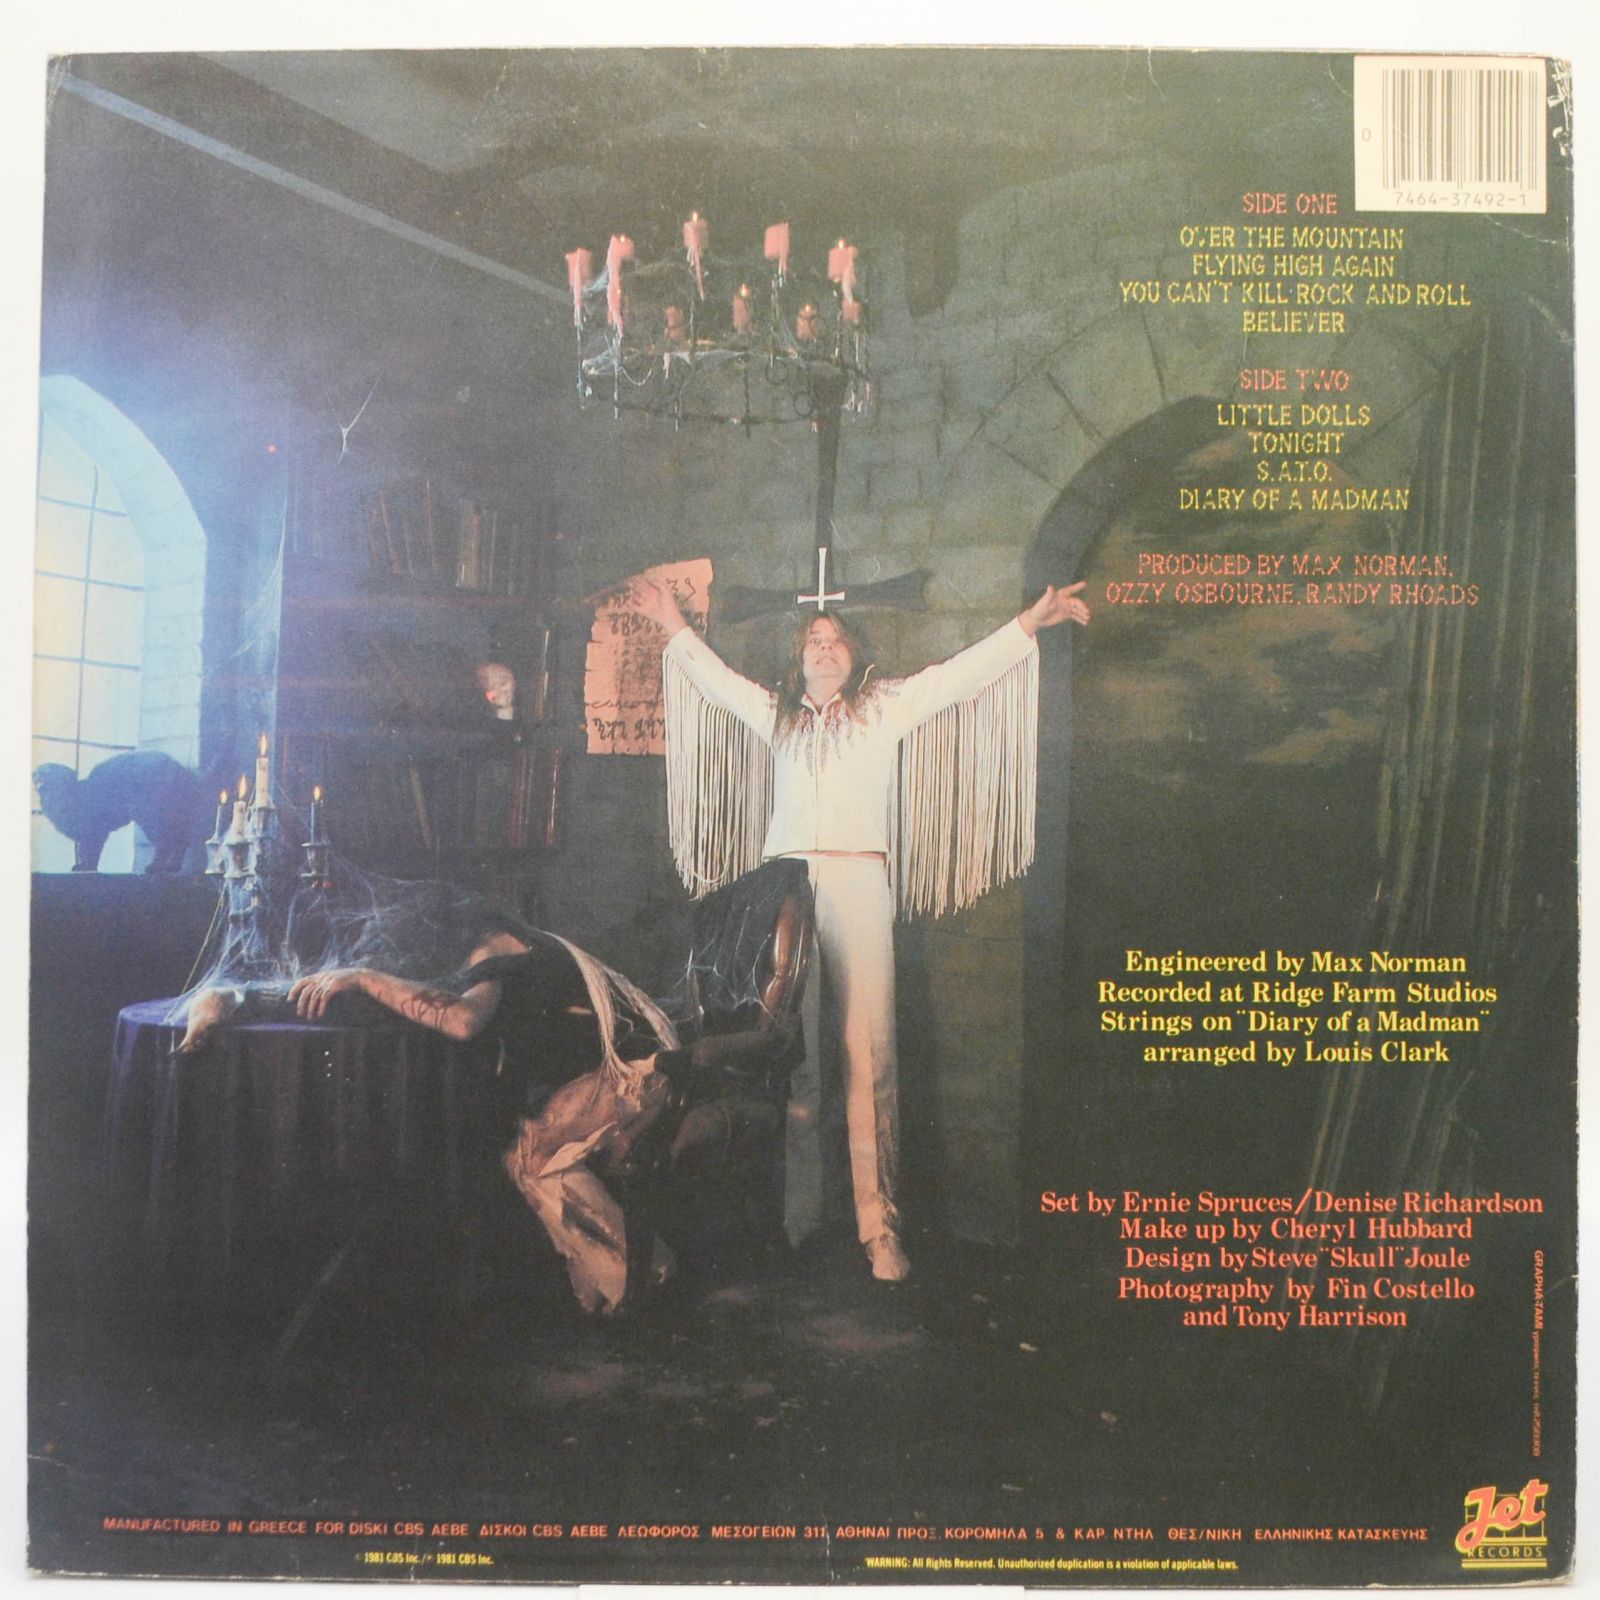 Ozzy Osbourne — Diary Of A Madman, 1981